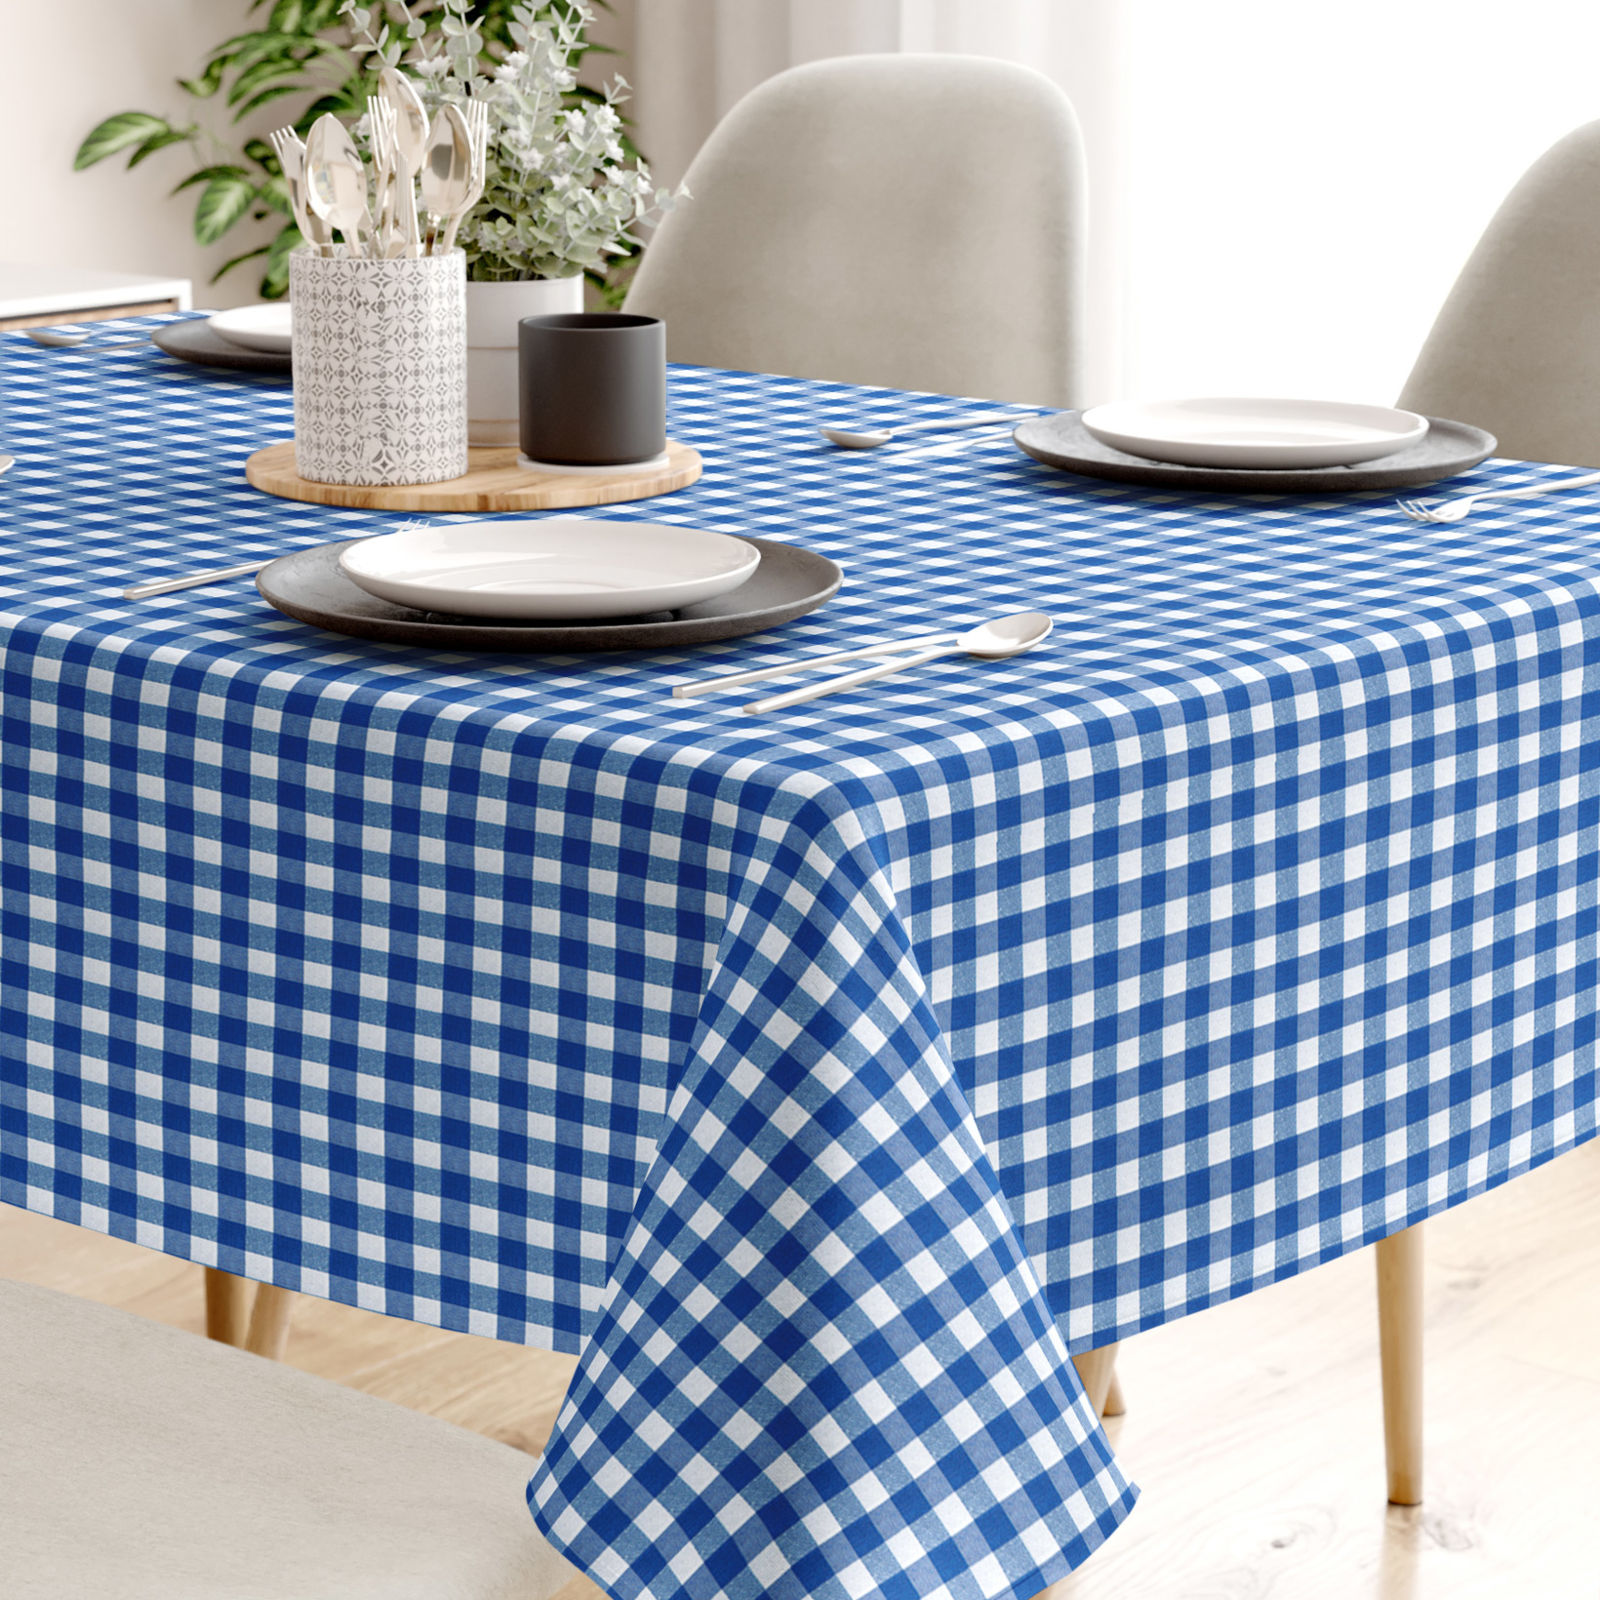 Față de masă decorativă MENORCA - carouri mari albastru-alb